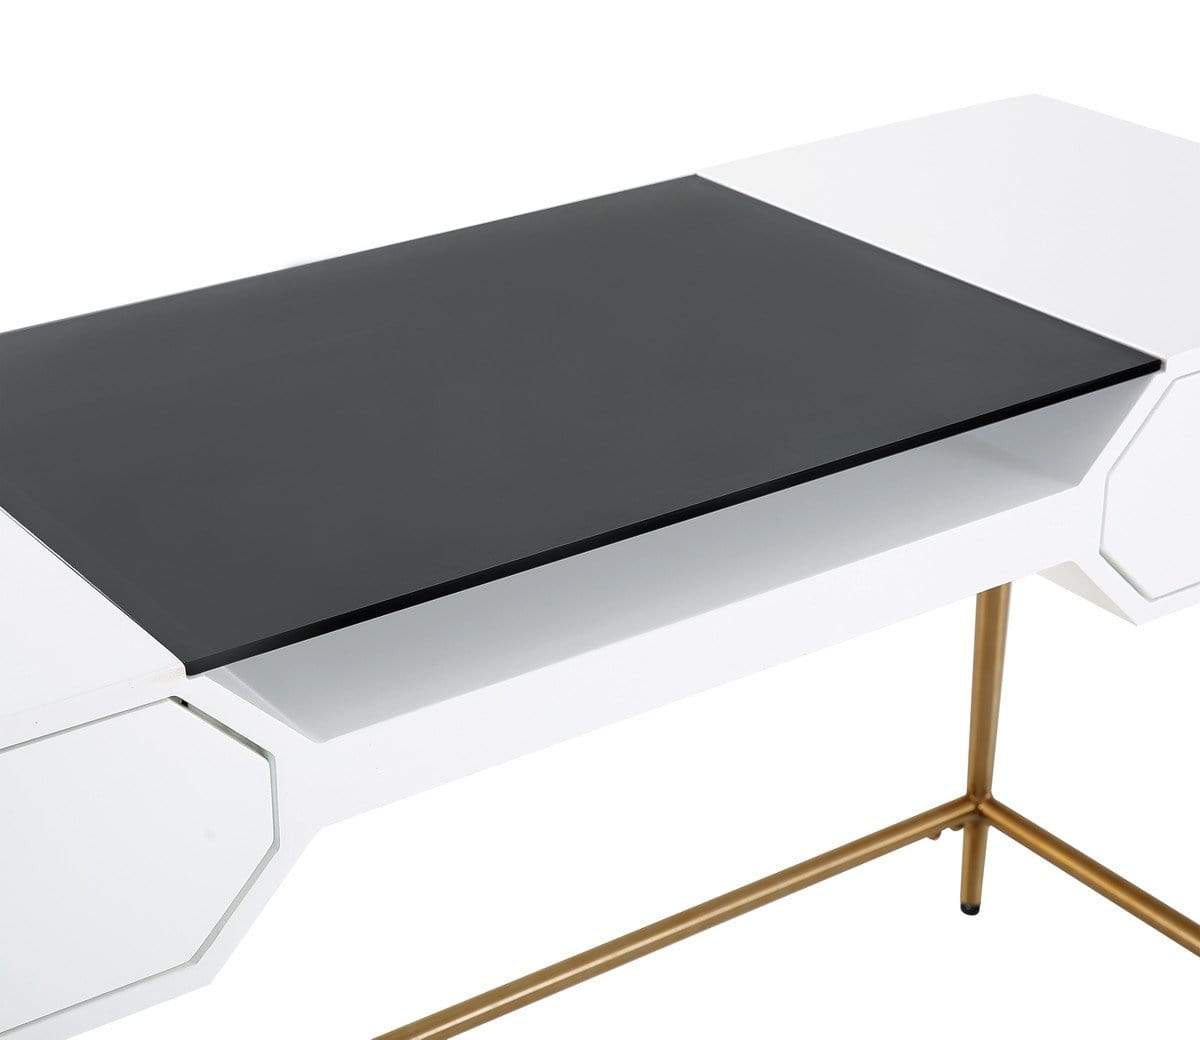 Candelabra Home Bajo Lacquer Desk - White Furniture TOV-H5527